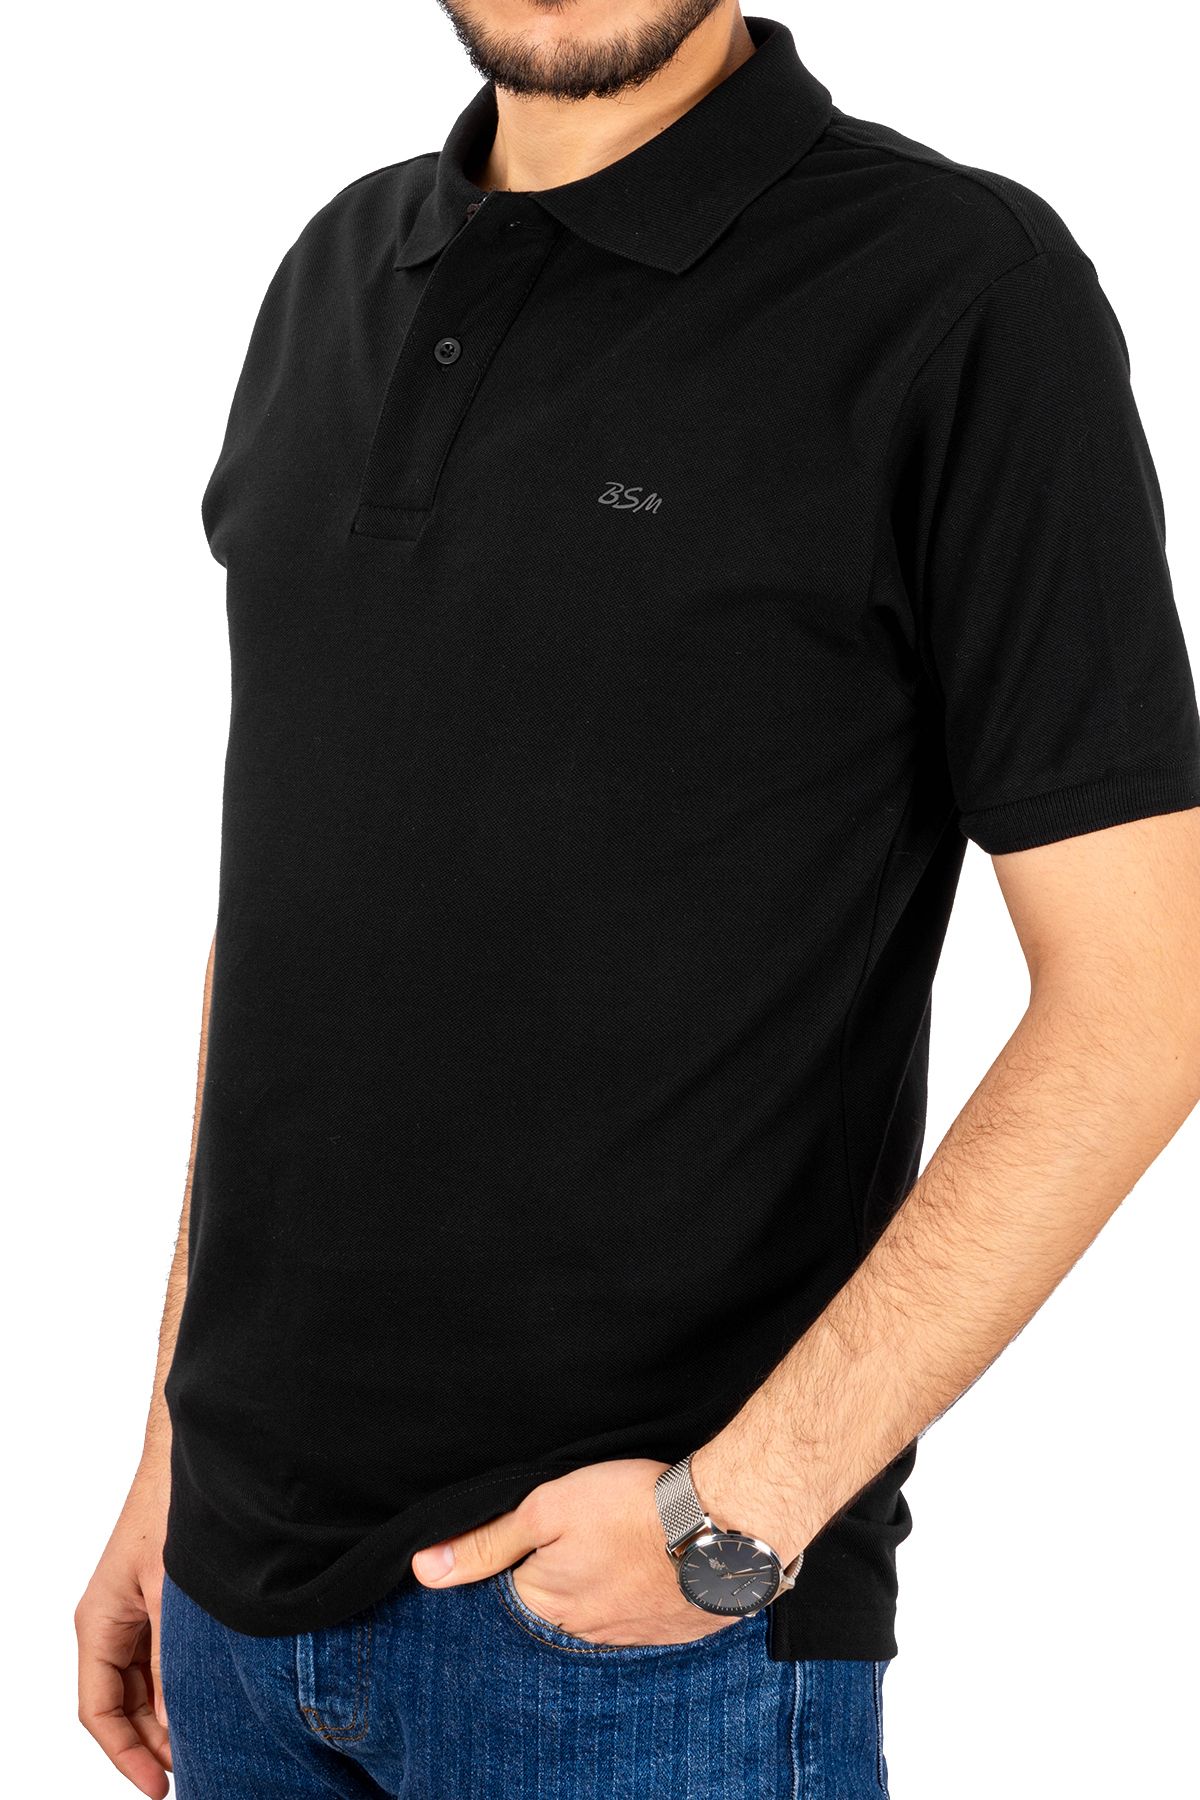 BSM Erkek Yüksek Kalite Kısa Kollu Polo Yaka Siyah Pike T-Shirt